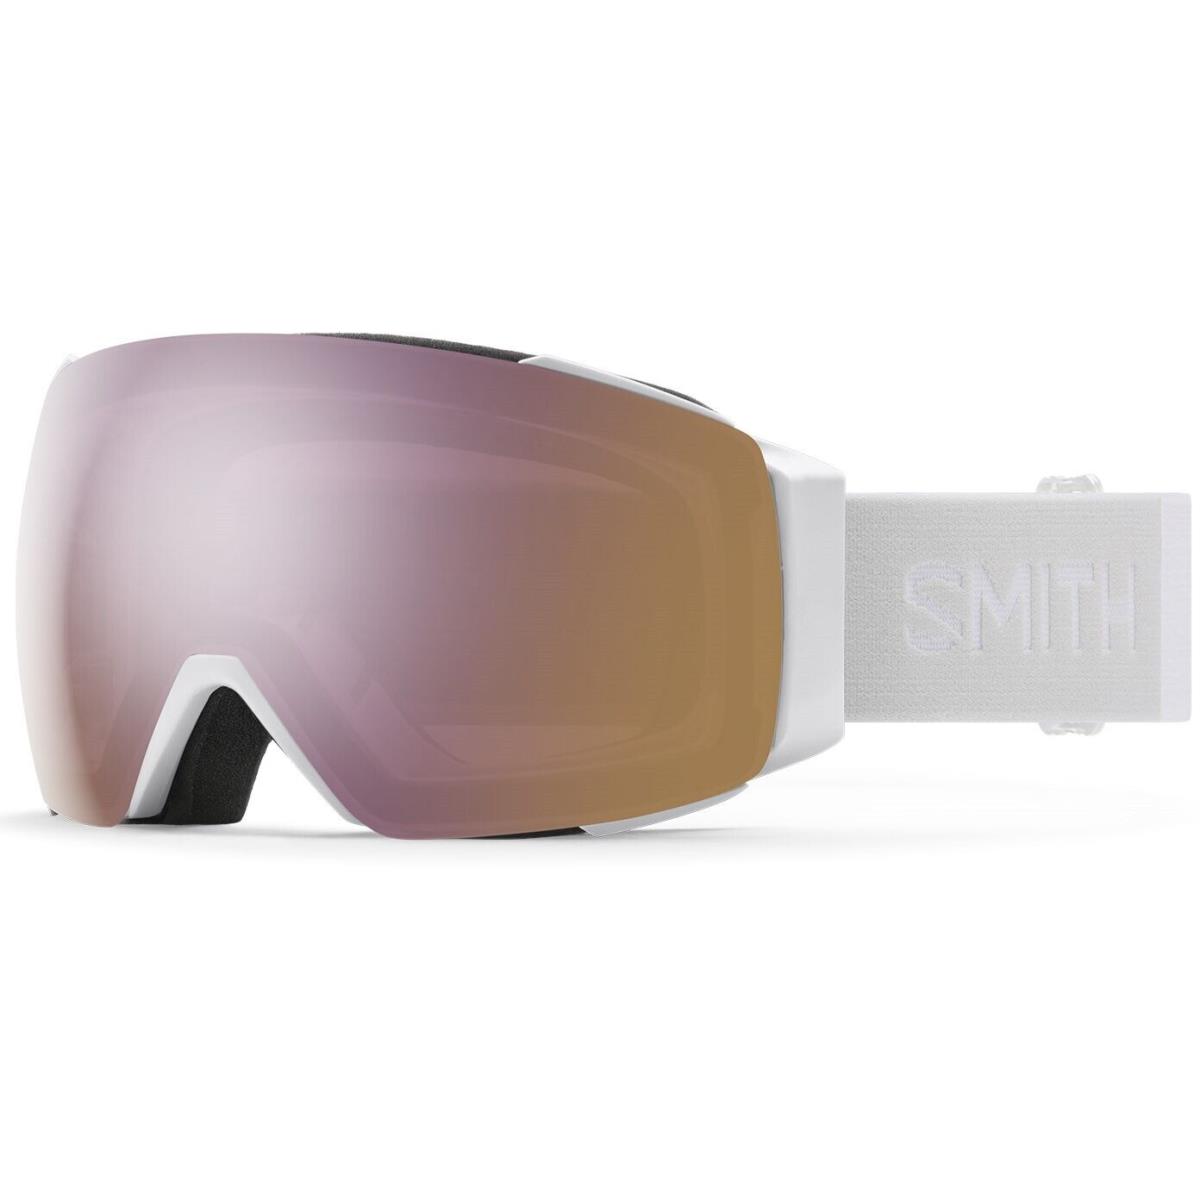 Smith I/o Mag S Ski / Snow Goggles White Vapor Everyday Rose Gold Mirror +bonus